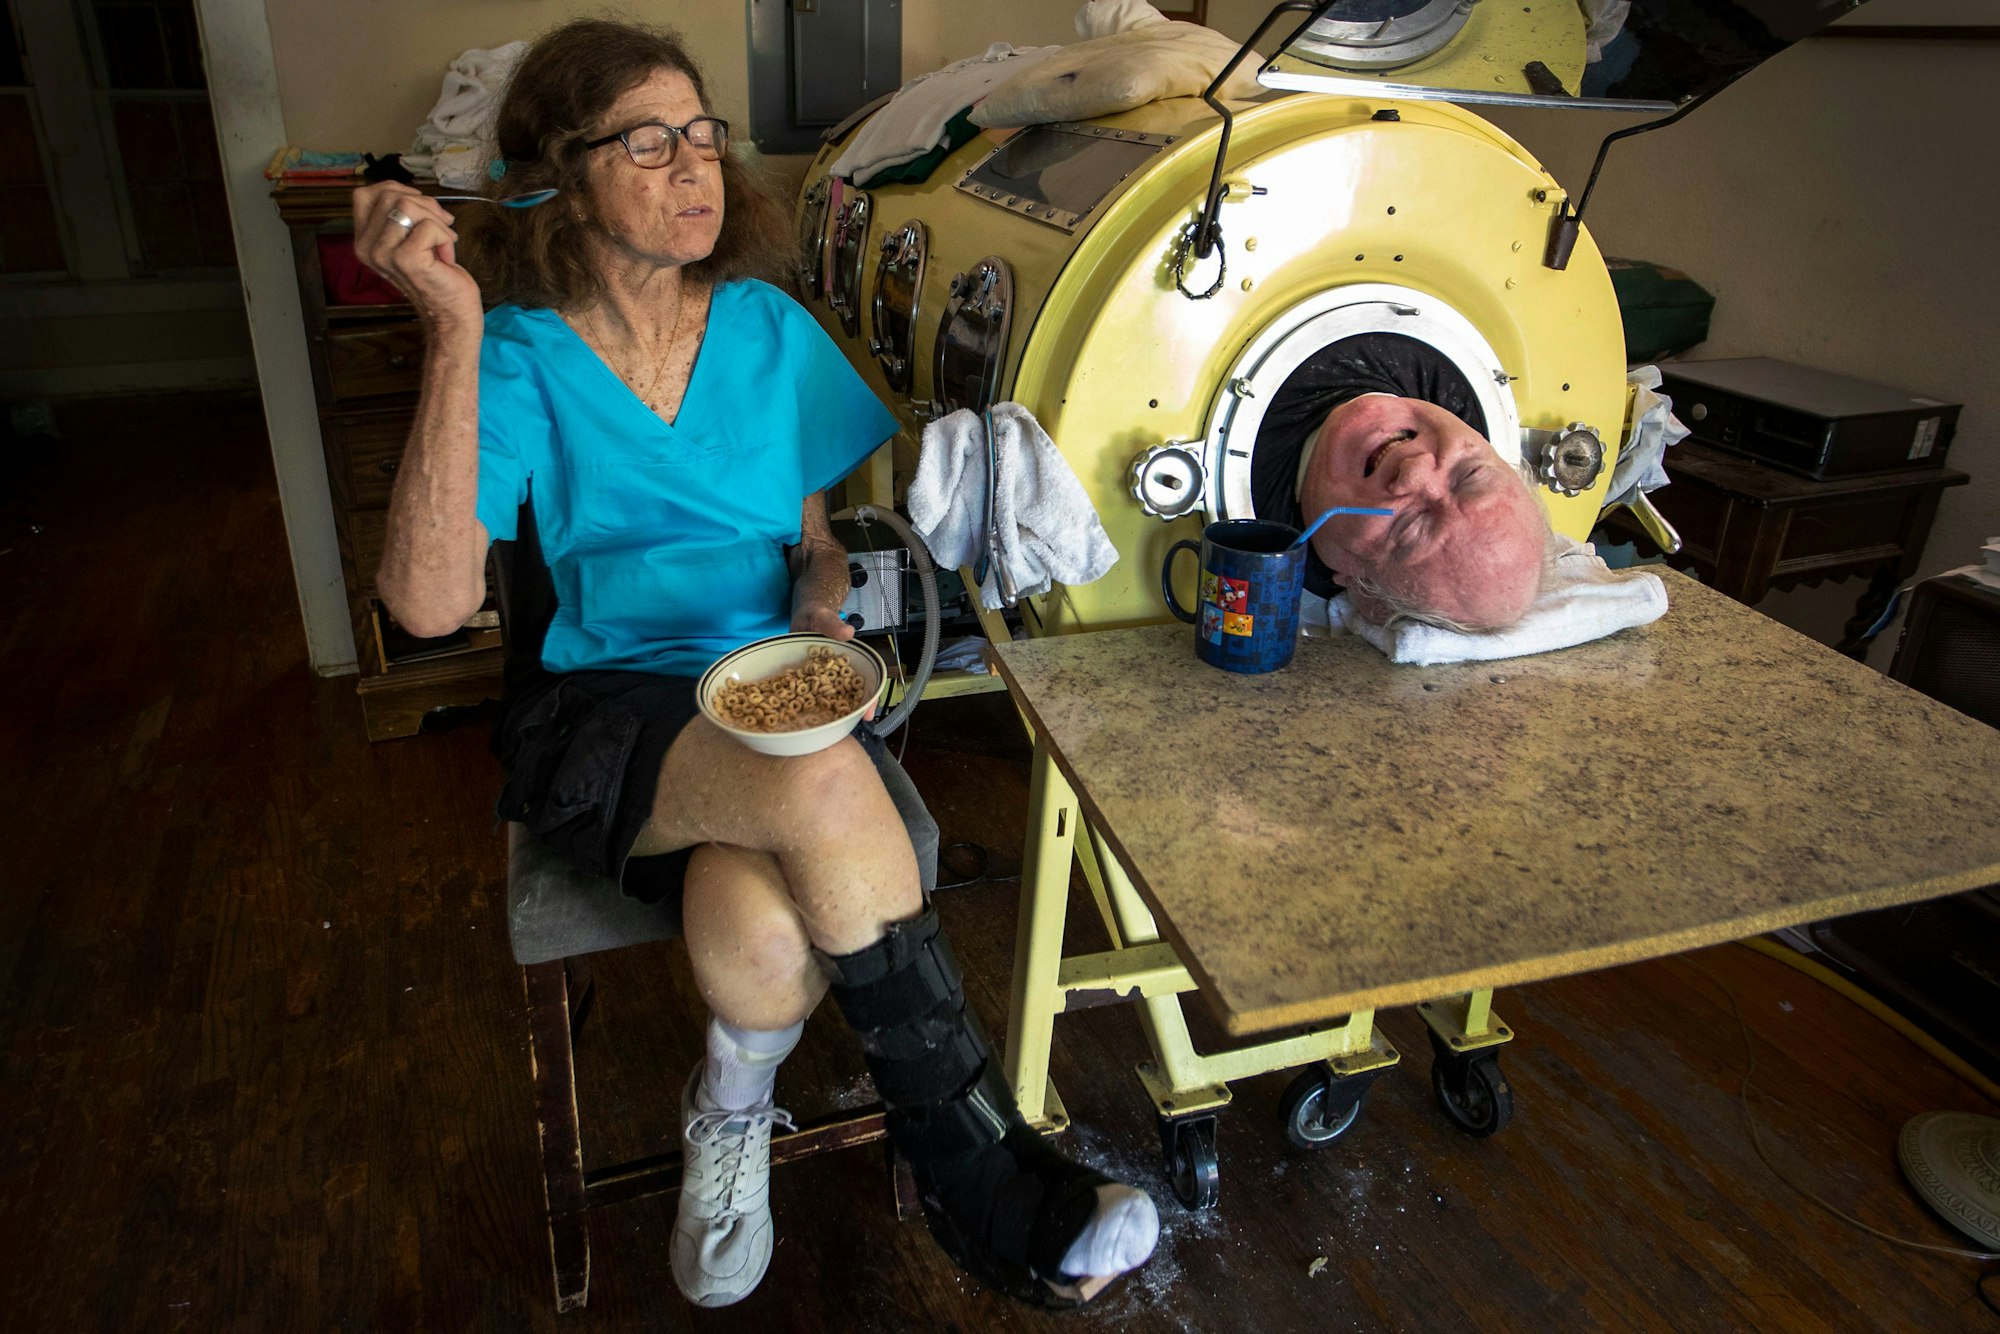 Paul Alexander mit seiner Betreuerin und Freundin Kathryn Gaines, während er Kaffee trinkt und sie neben seiner eisernen Lunge in seinem Haus frühstückt. (Archivbild)